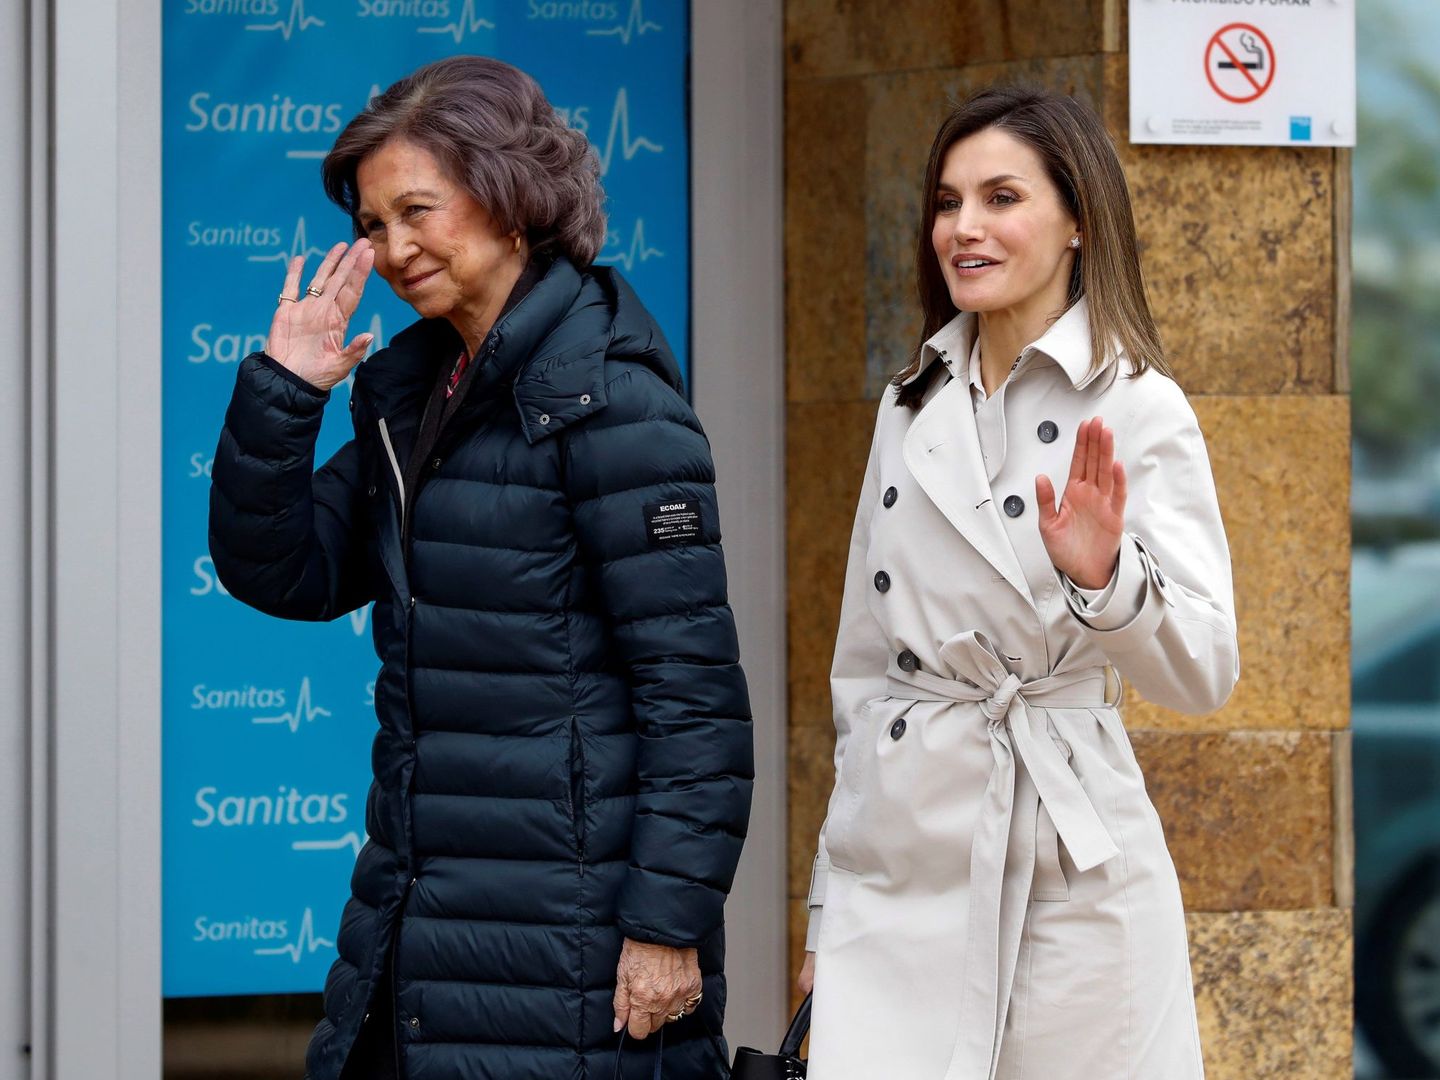 La reina Sofía y la reina Letizia, llegando juntas al hospital donde había sido operado don Juan Carlos. (EFE)